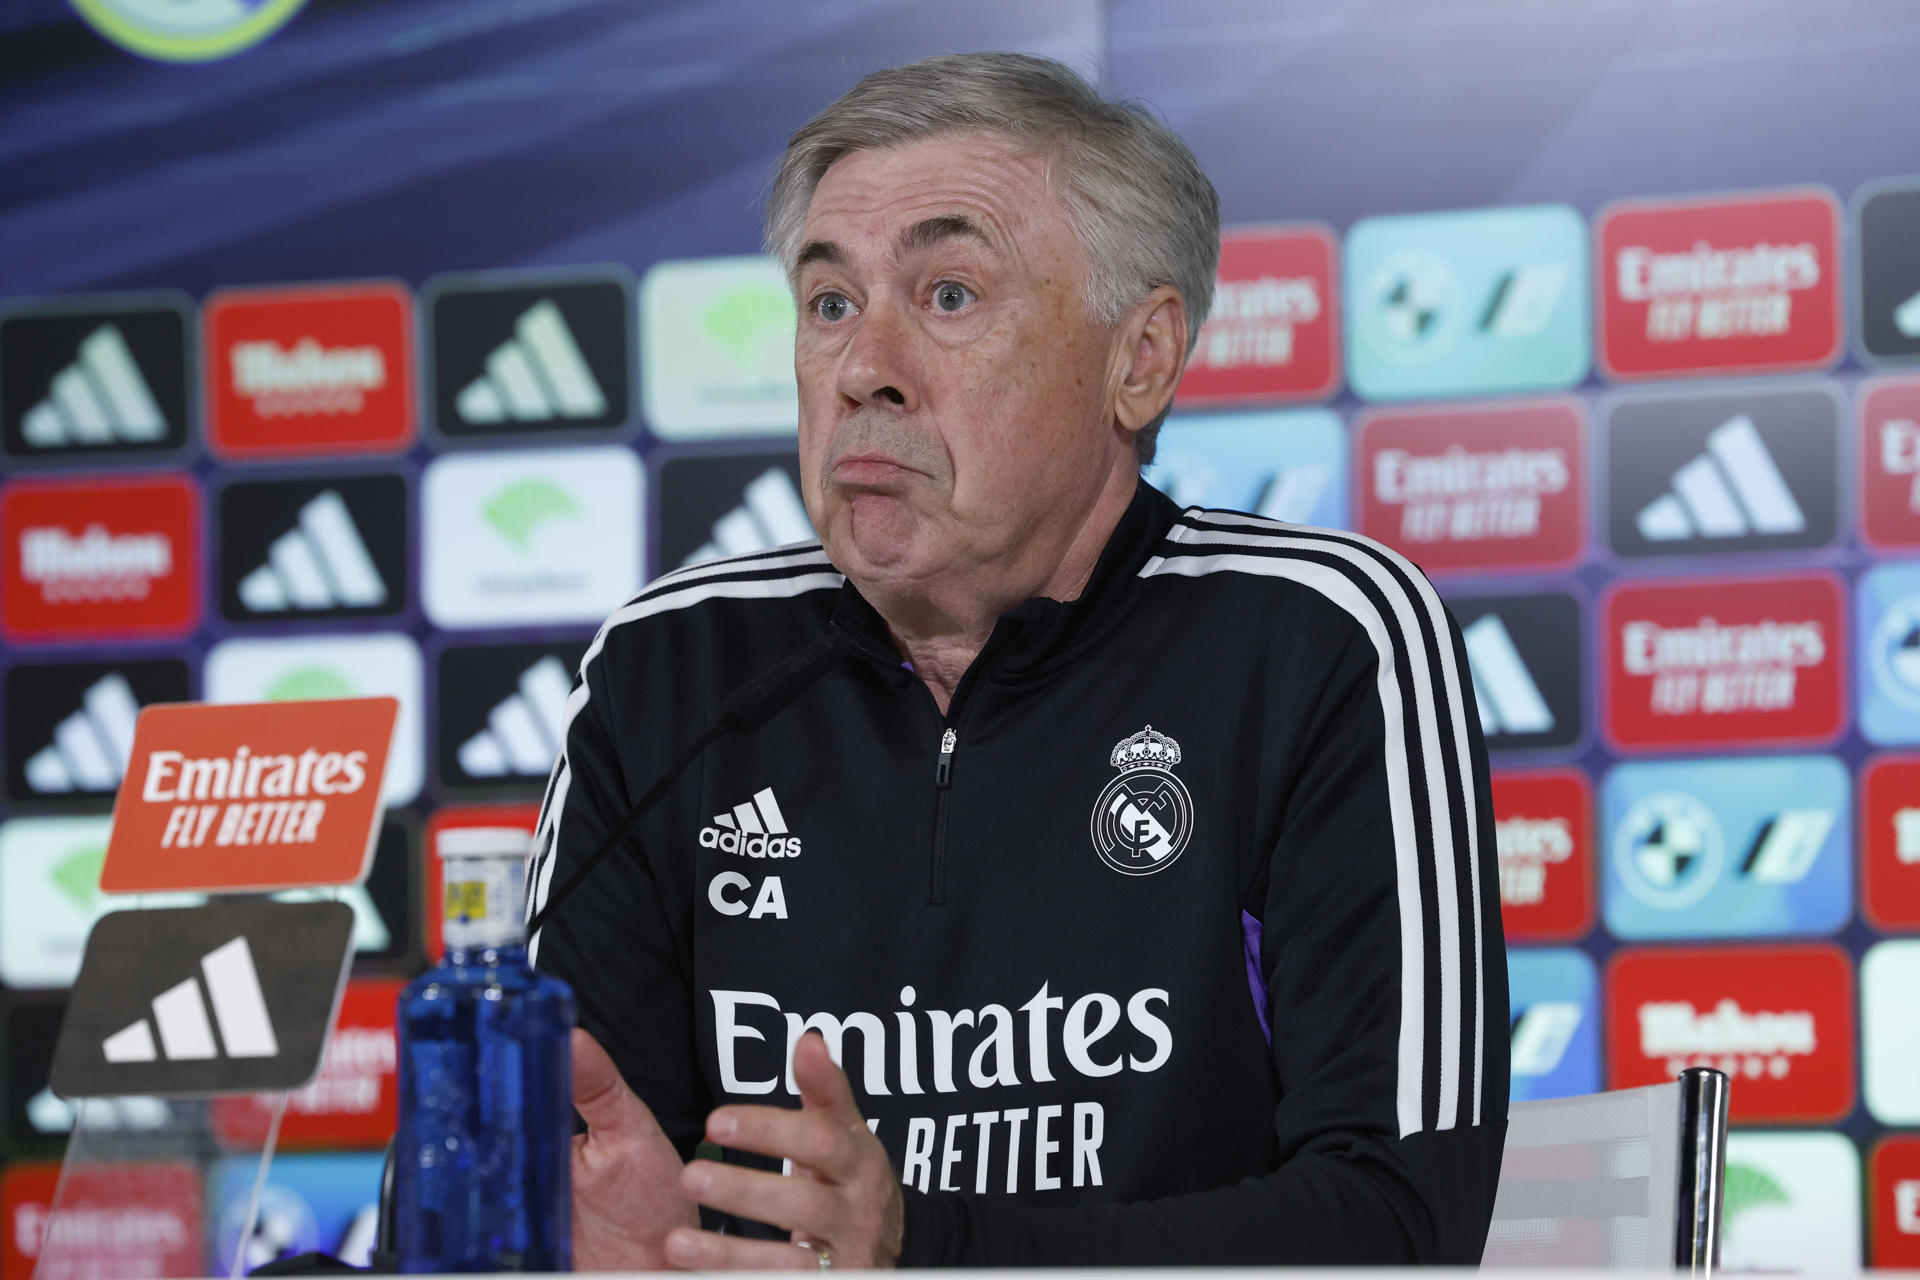 El entrenador del Real Madrid, Carlo Ancelotti, en una imagen reciente. EFE/ J.J. Guillén